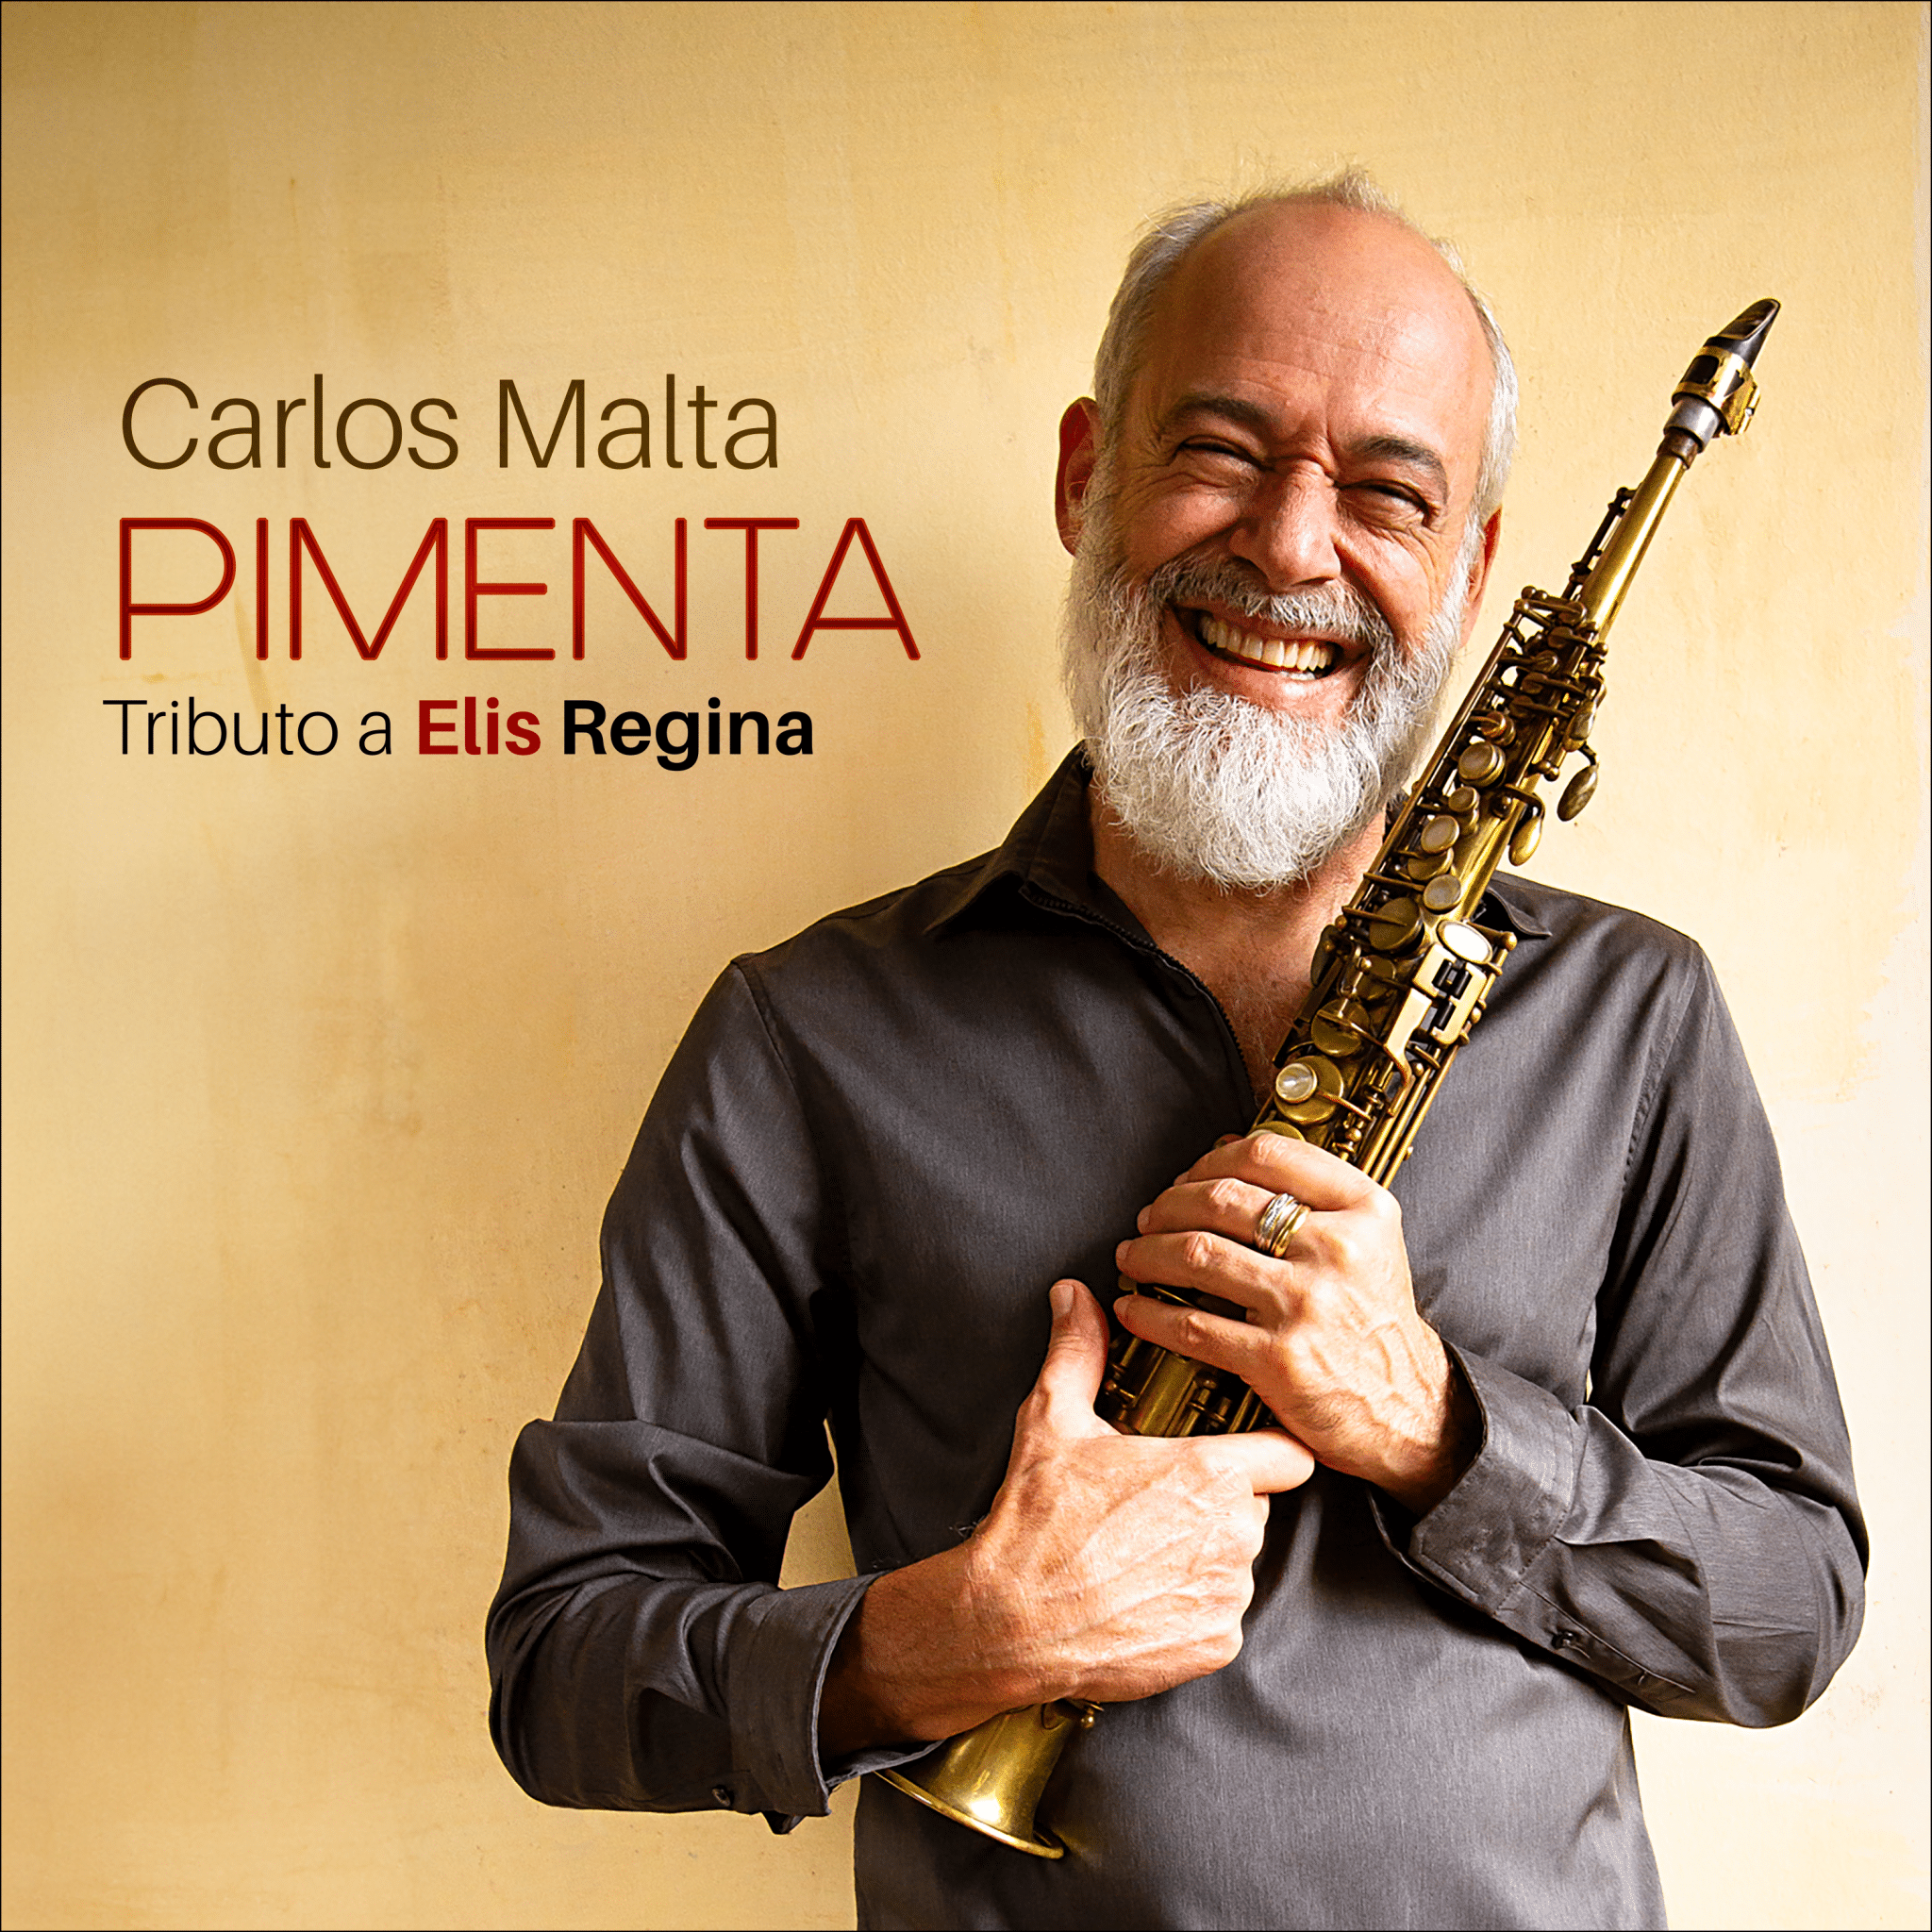 revistaprosaversoearte.com - Carlos Malta lança o álbum 'Pimenta', um tributo a Elis Regina, nas plataformas de música